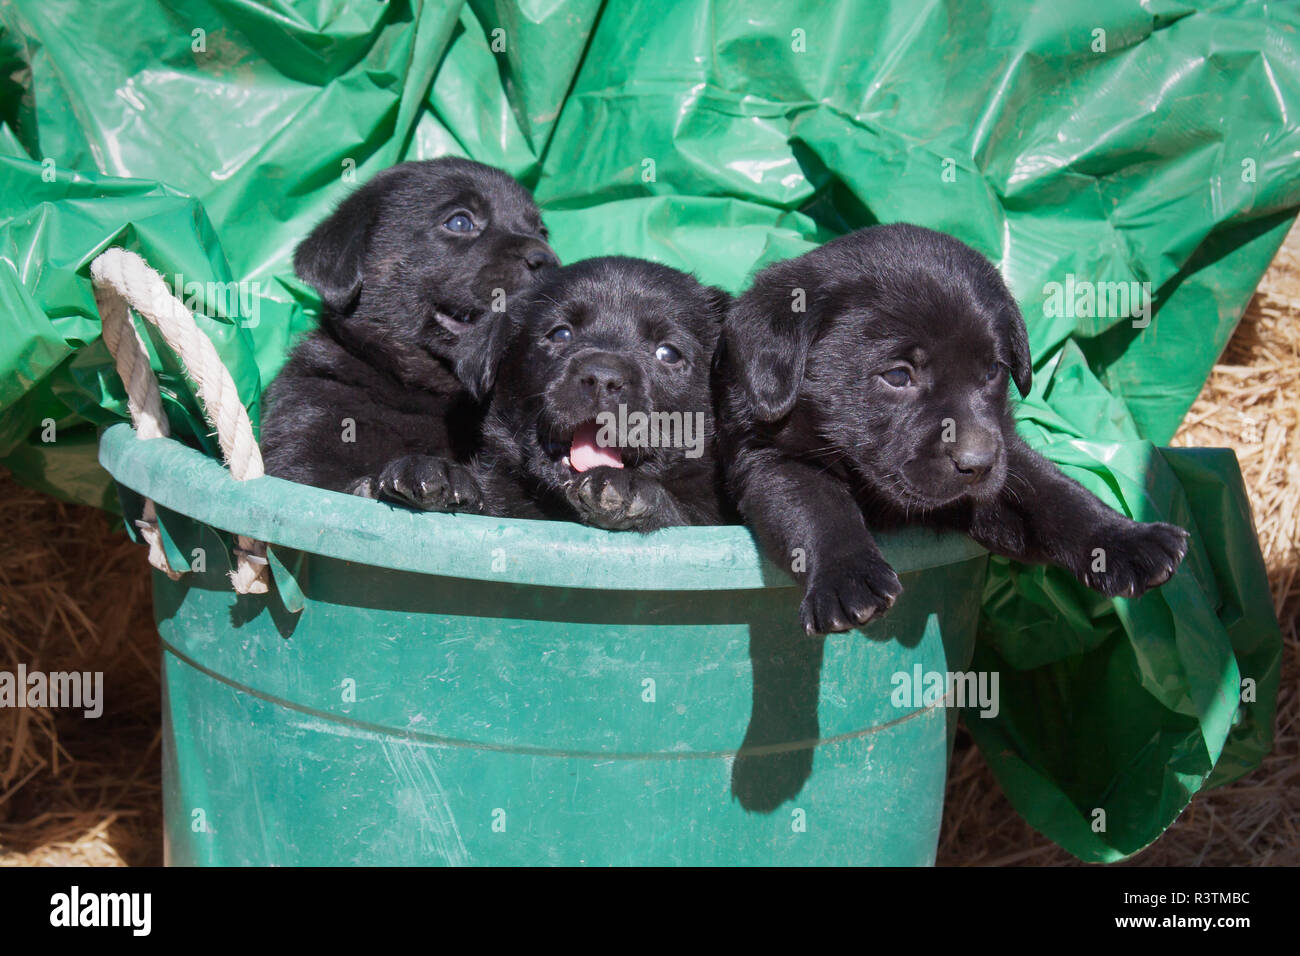 Trois chiots Labrador noir vert dans un seau (PR) Banque D'Images